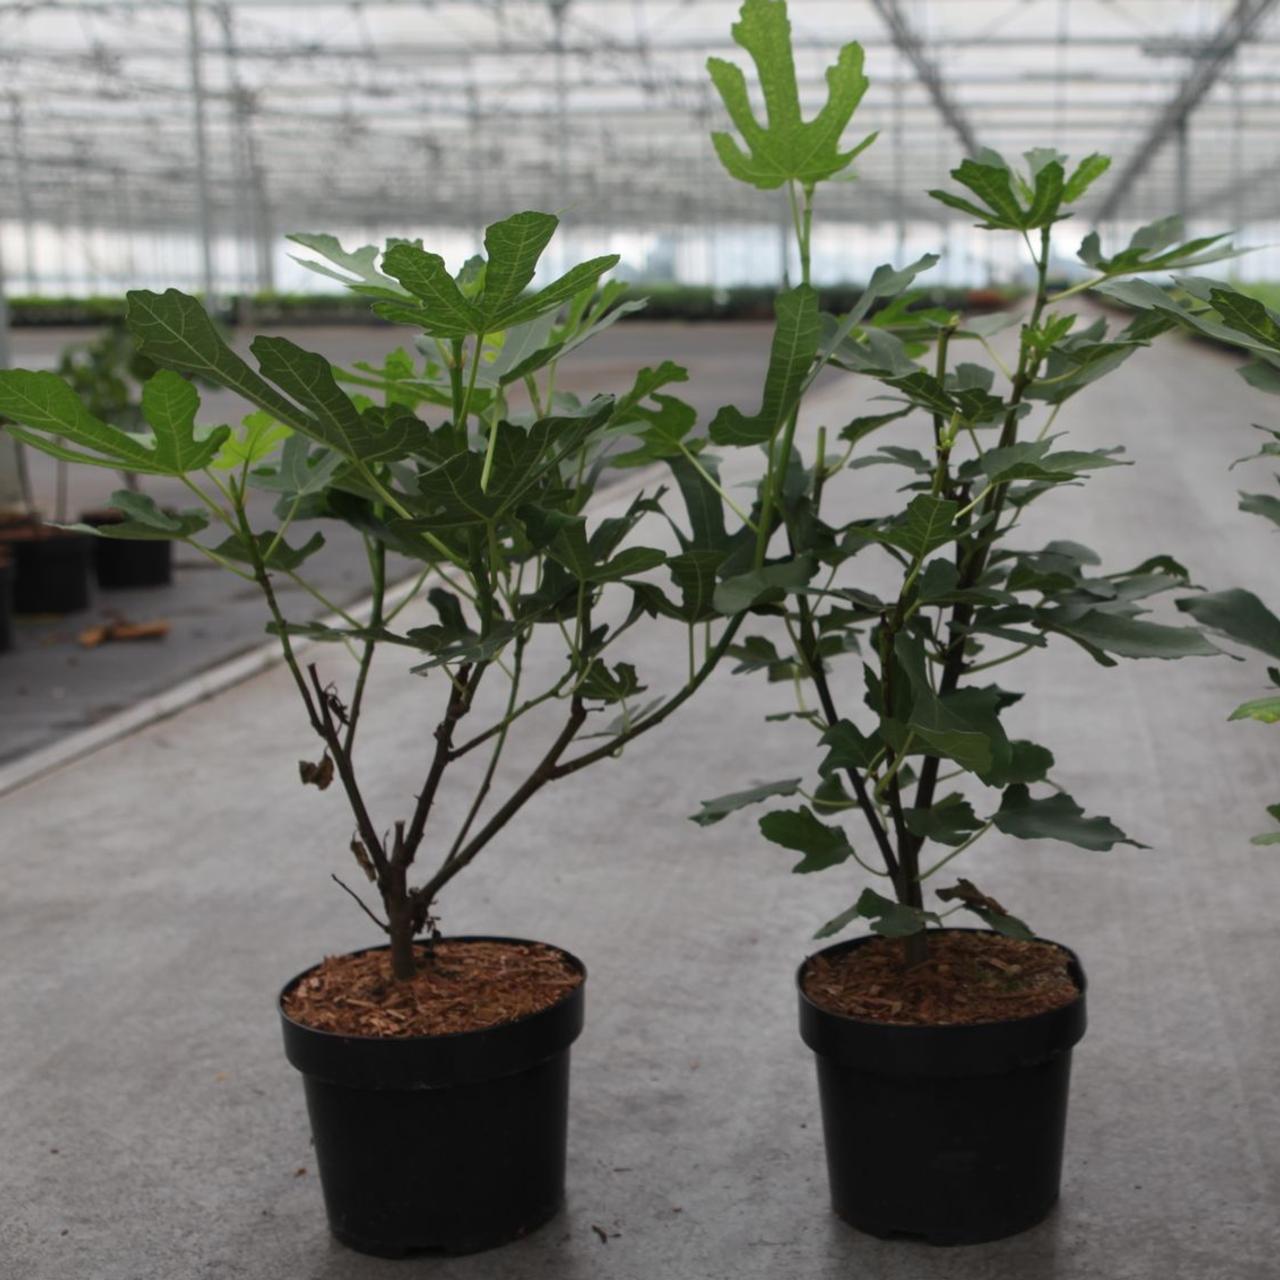 Ficus carica 'Osborn's Prolific' plant